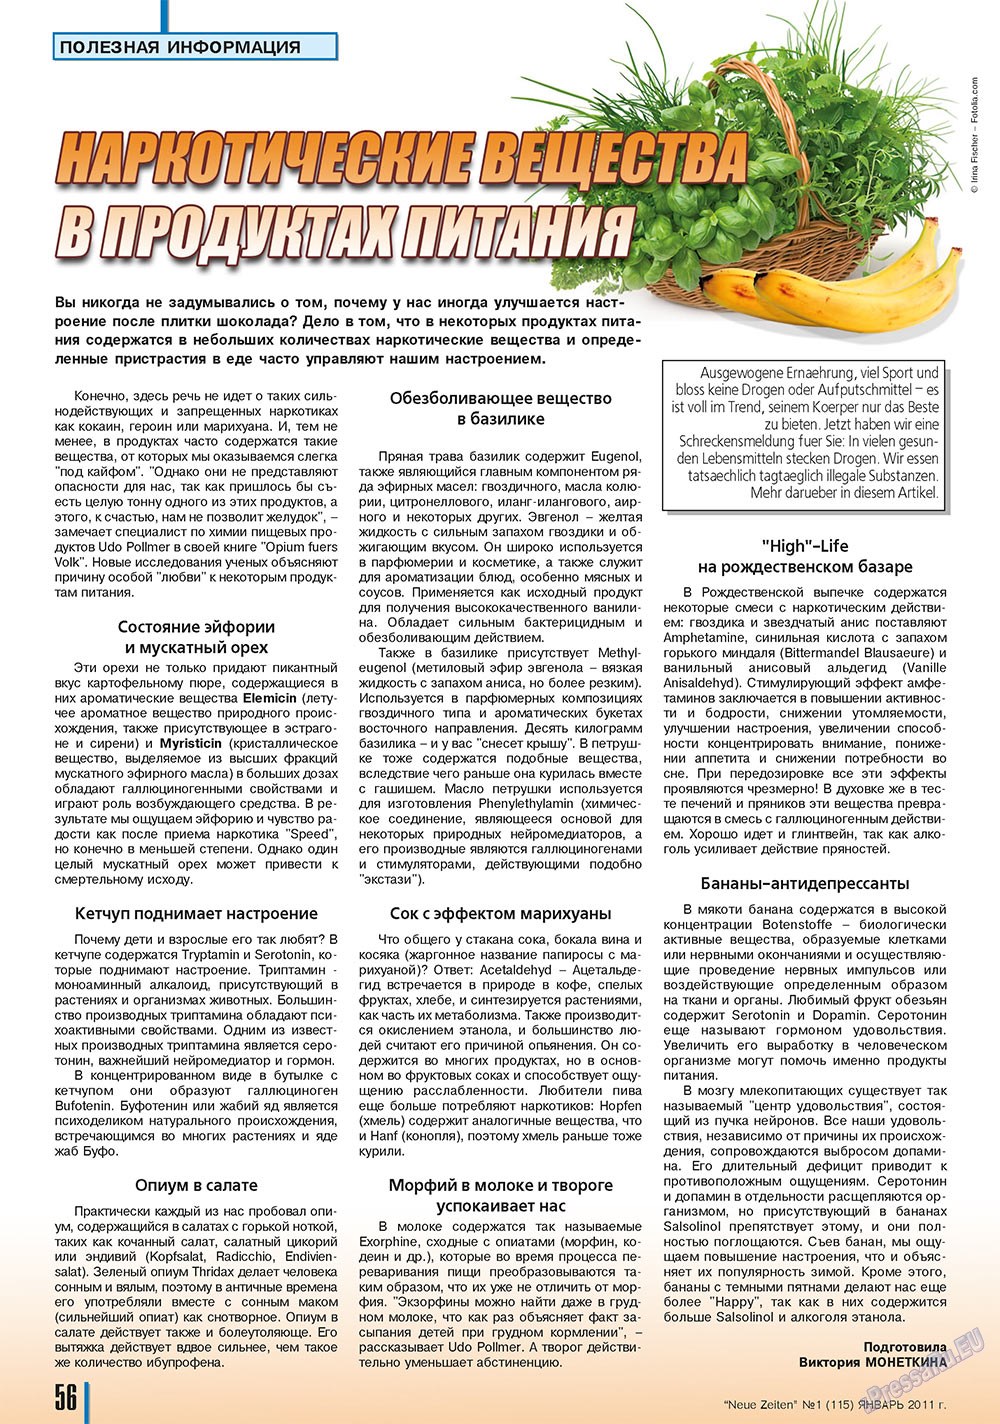 Neue Zeiten, журнал. 2011 №1 стр.58